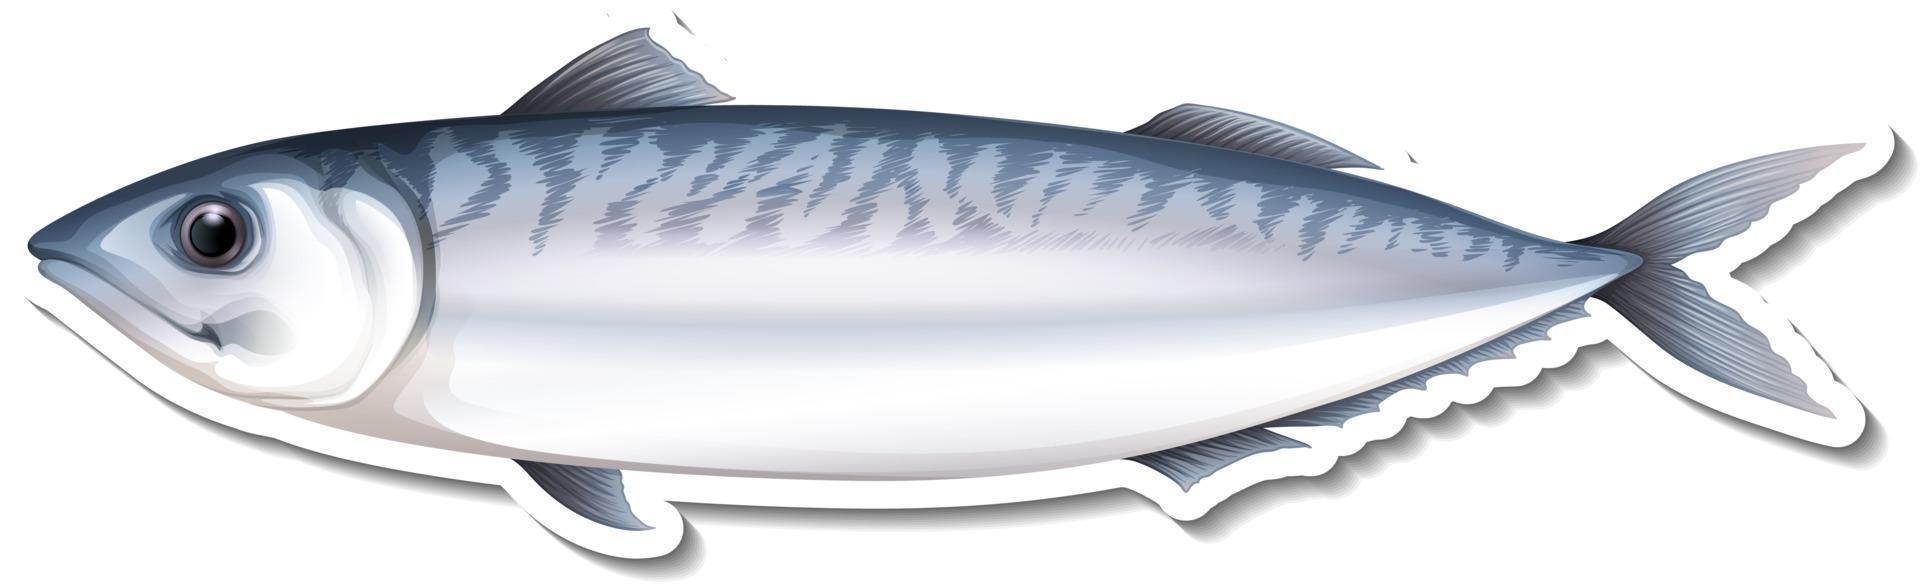 makreel zeevis cartoon sticker vector